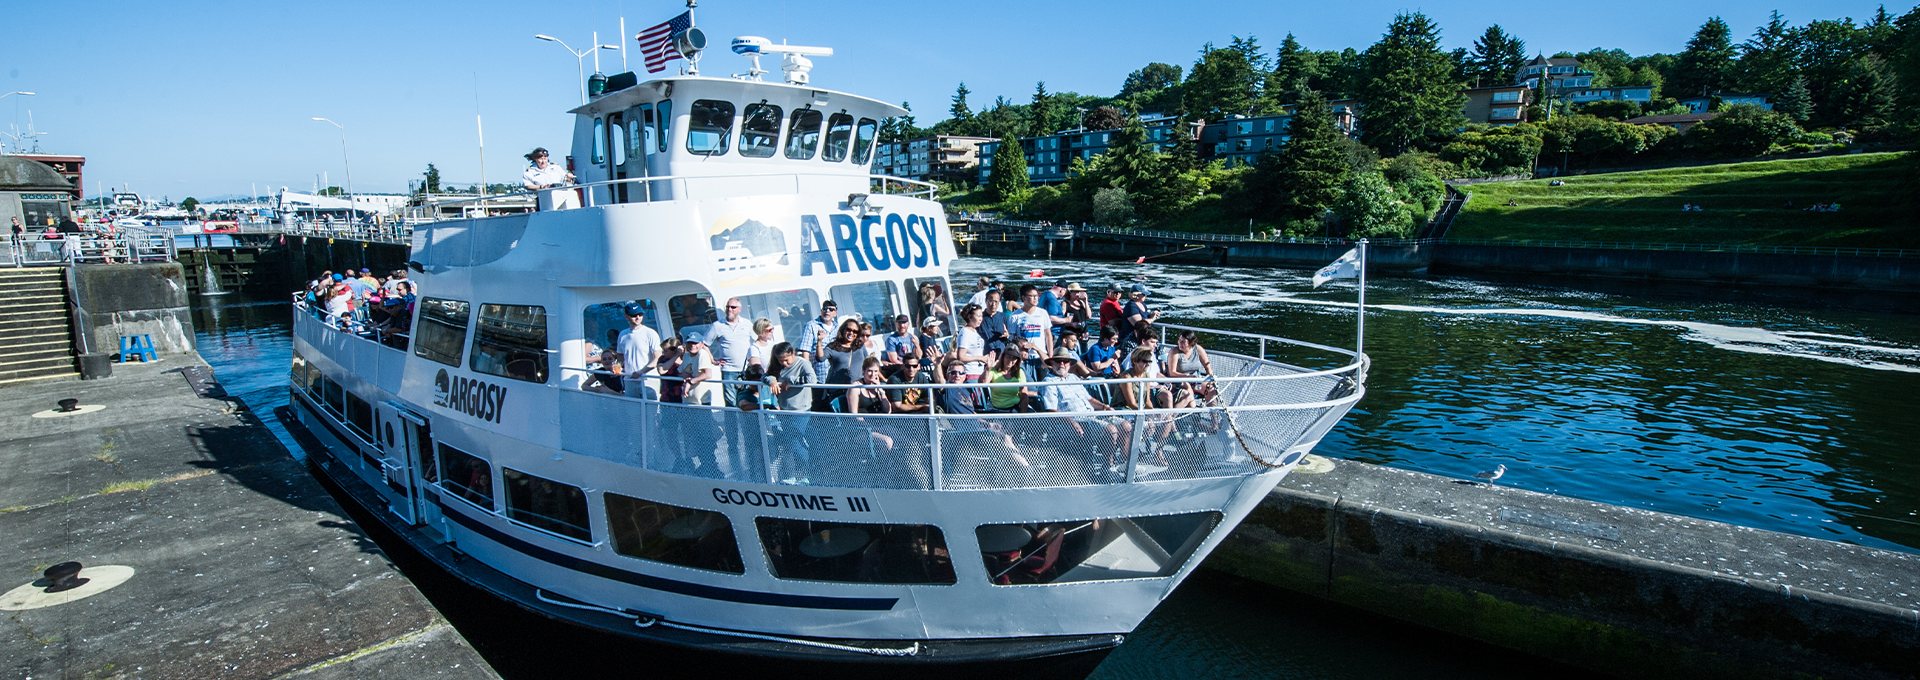 argosy boat cruise seattle